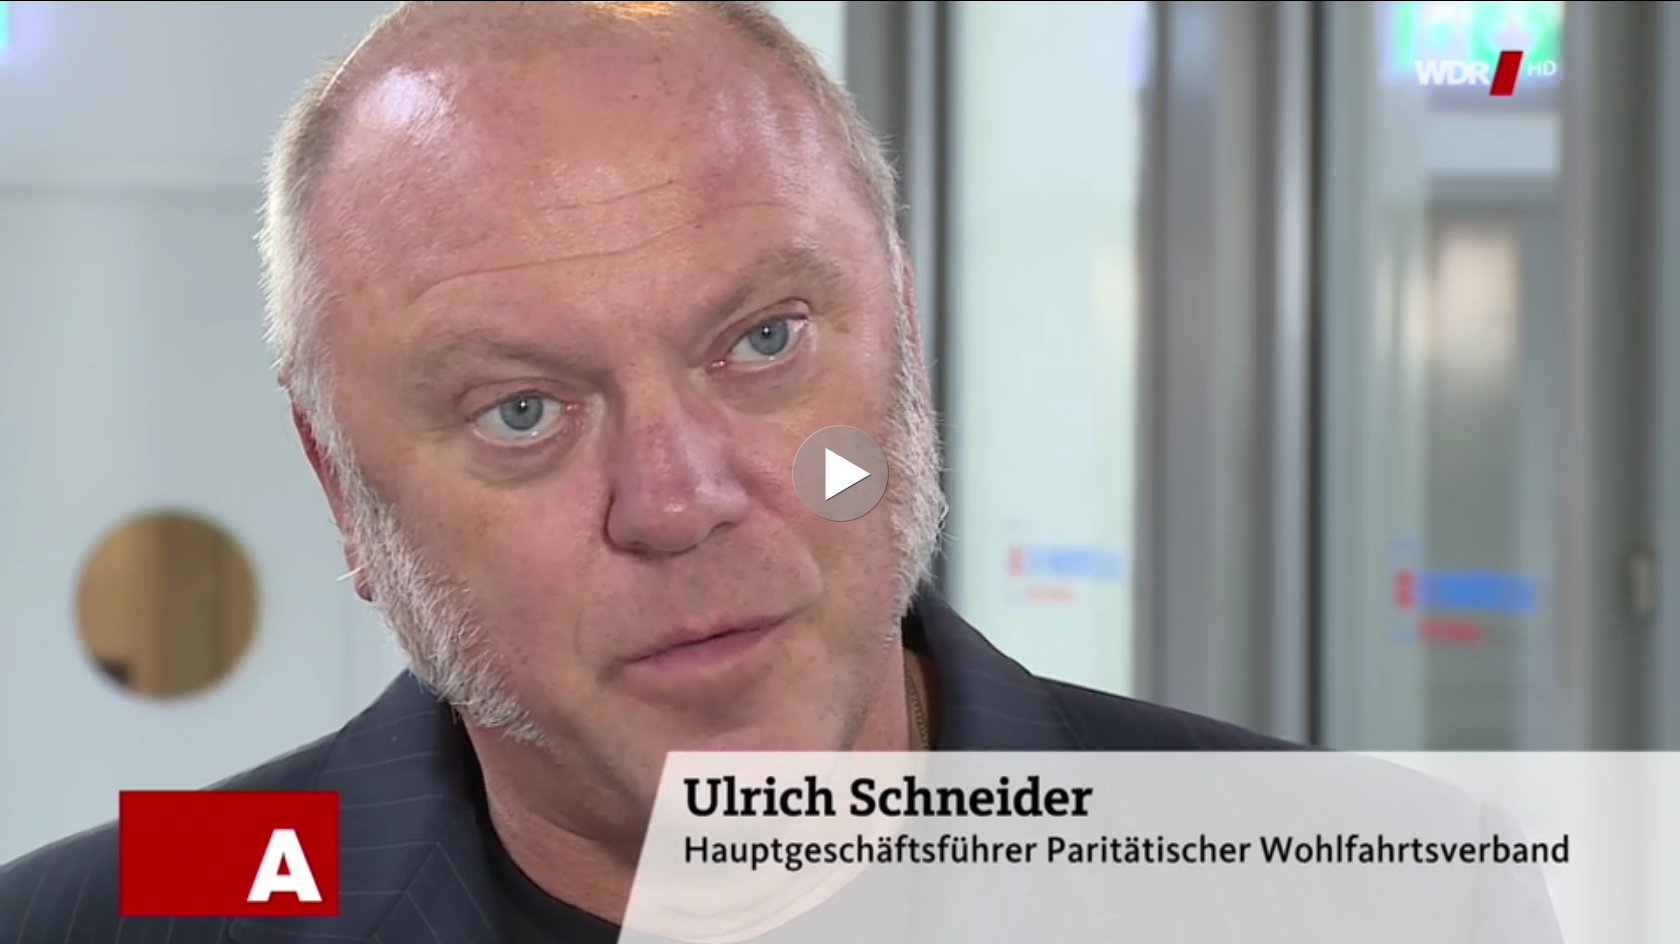 Ulrich Schneider in der Aktuellen Stunde beim WDR zum Pflege-Kompromiss